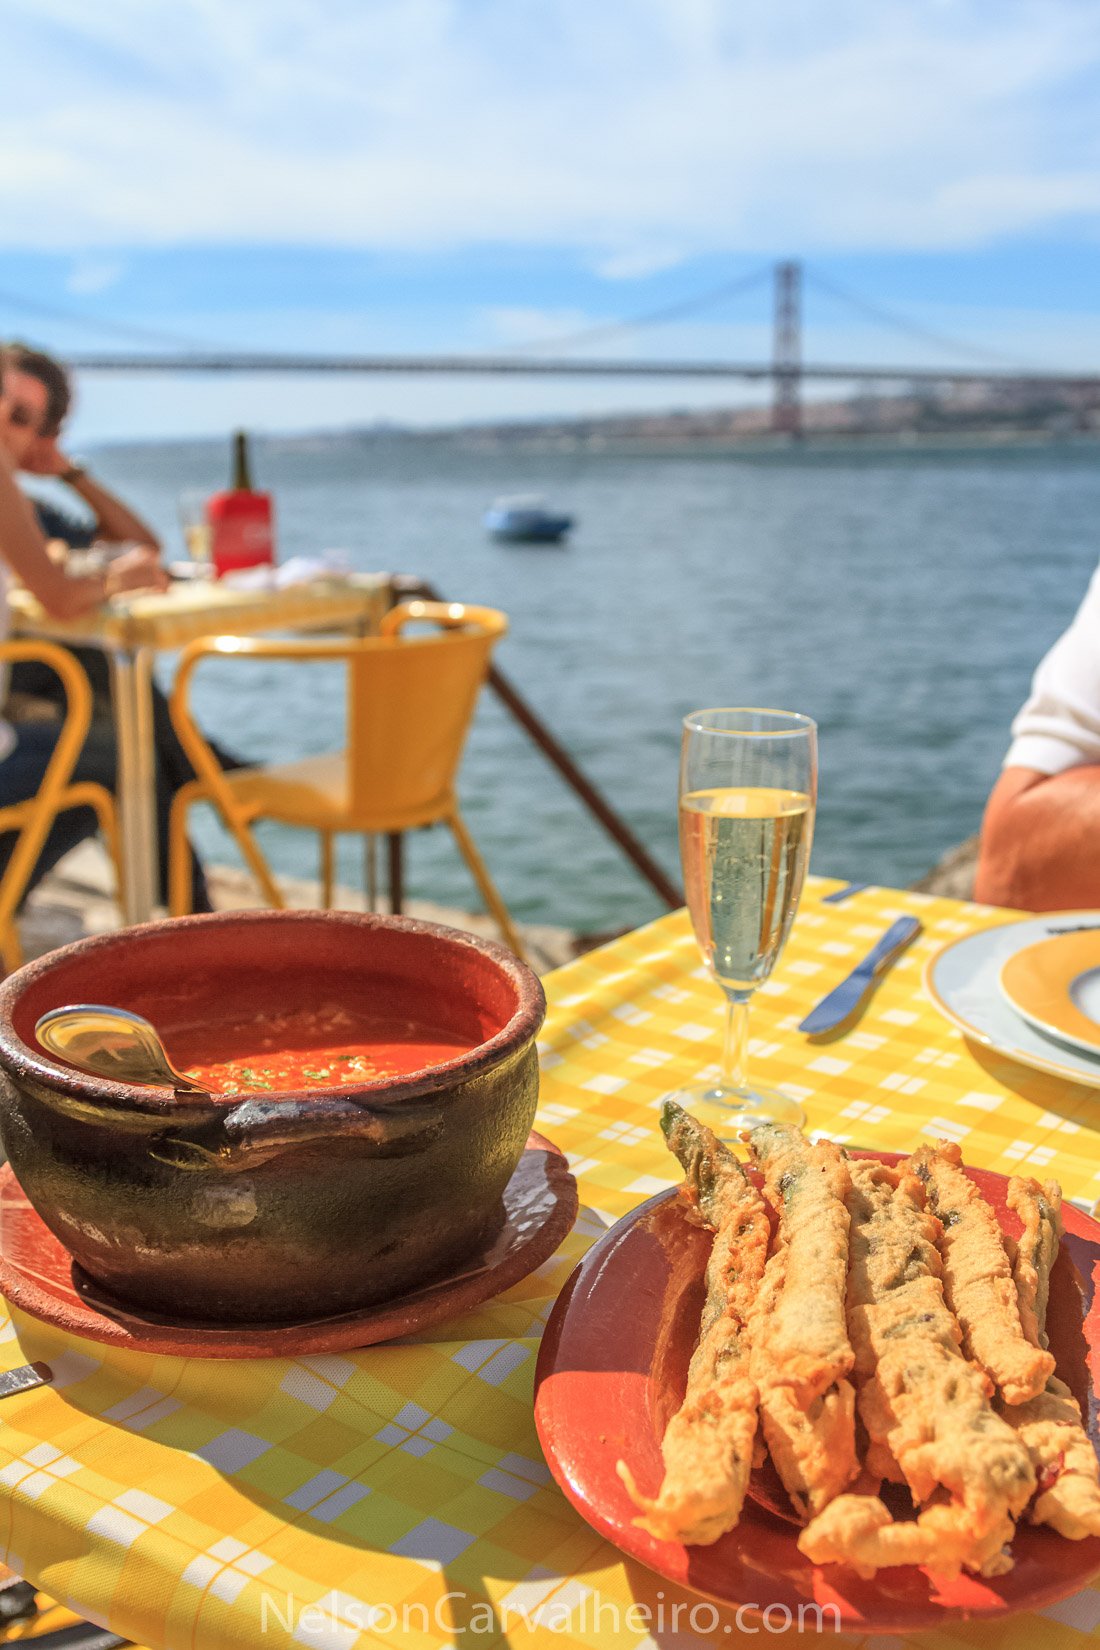 Nelson_Carvalheiro_Lisbon_Restaurants-1